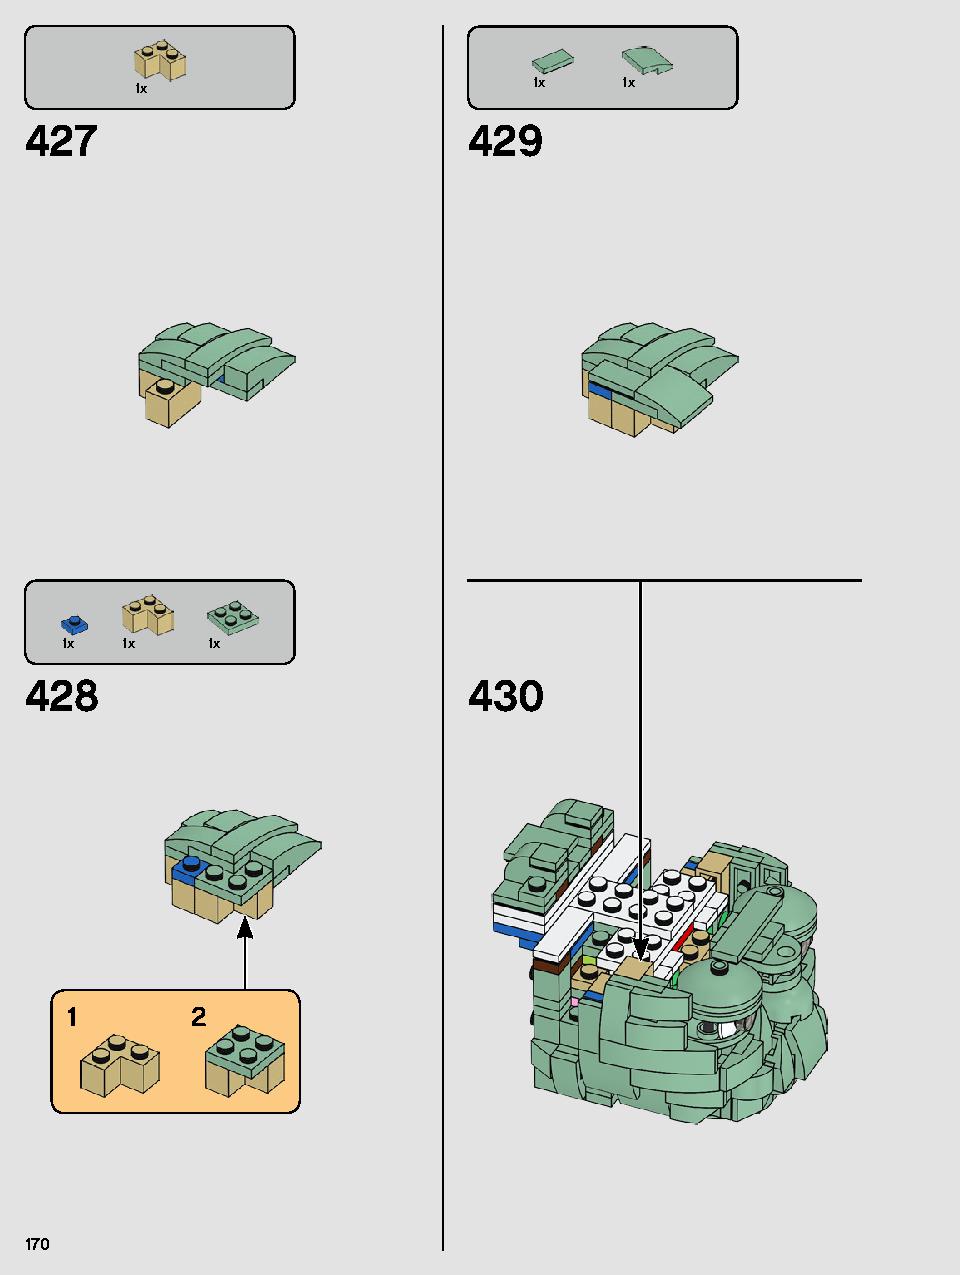 ヨーダ™ 75255 レゴの商品情報 レゴの説明書・組立方法 170 page